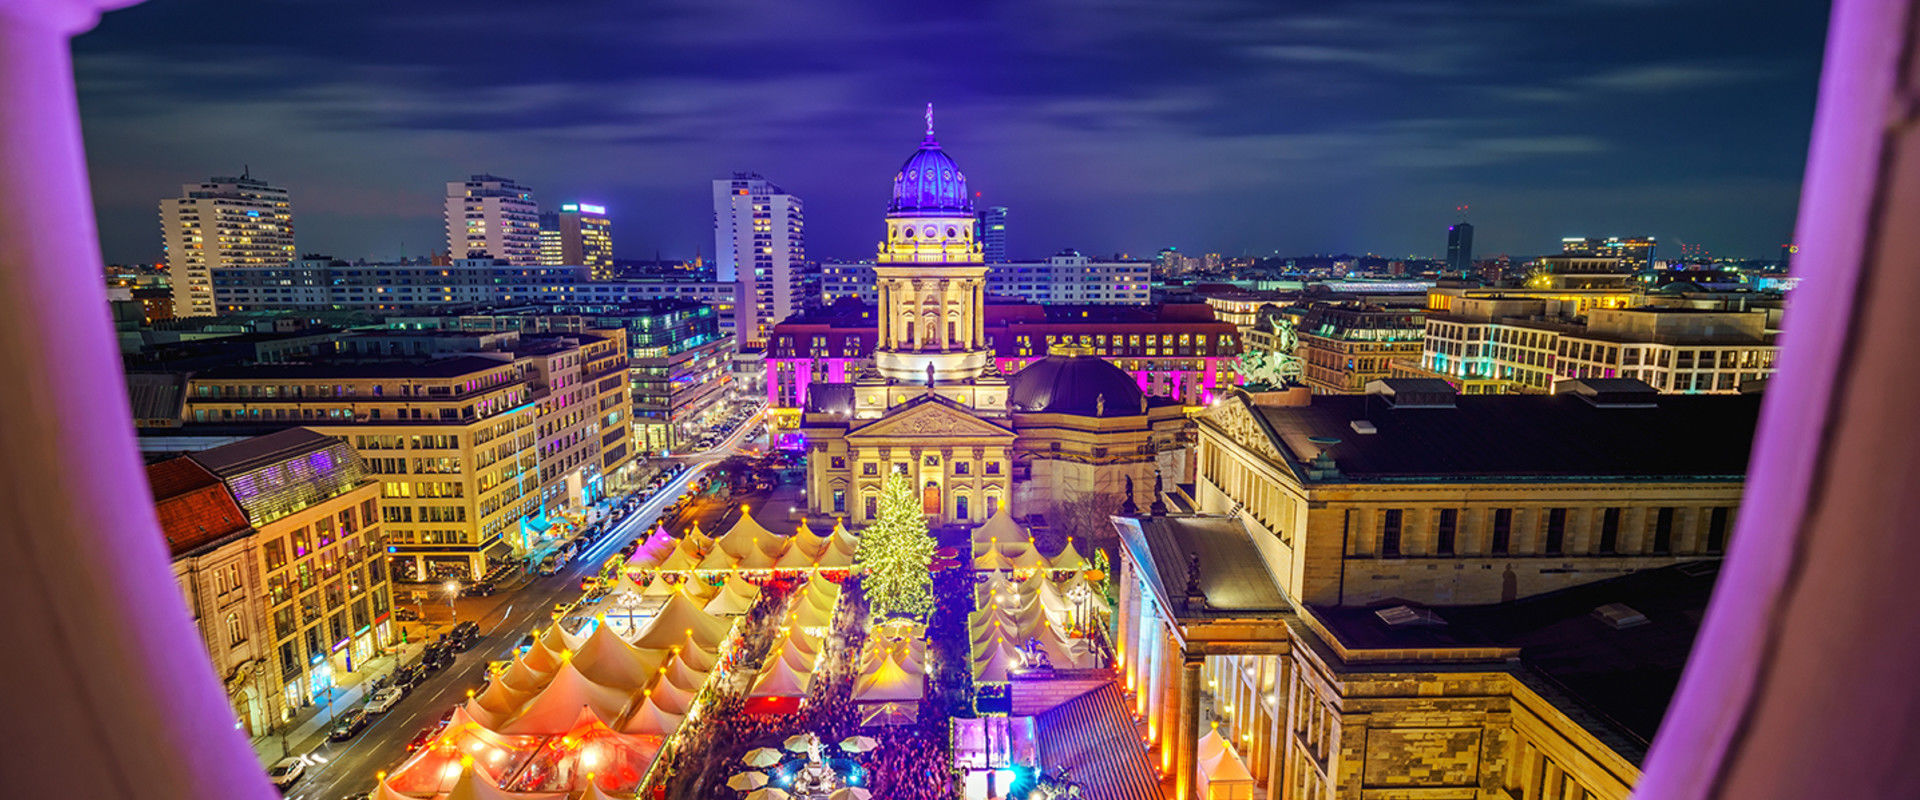 כיכר השוק העתיקה גנדרמנמרקט, ברלין (צילום: S.Borisov, shutterstock)